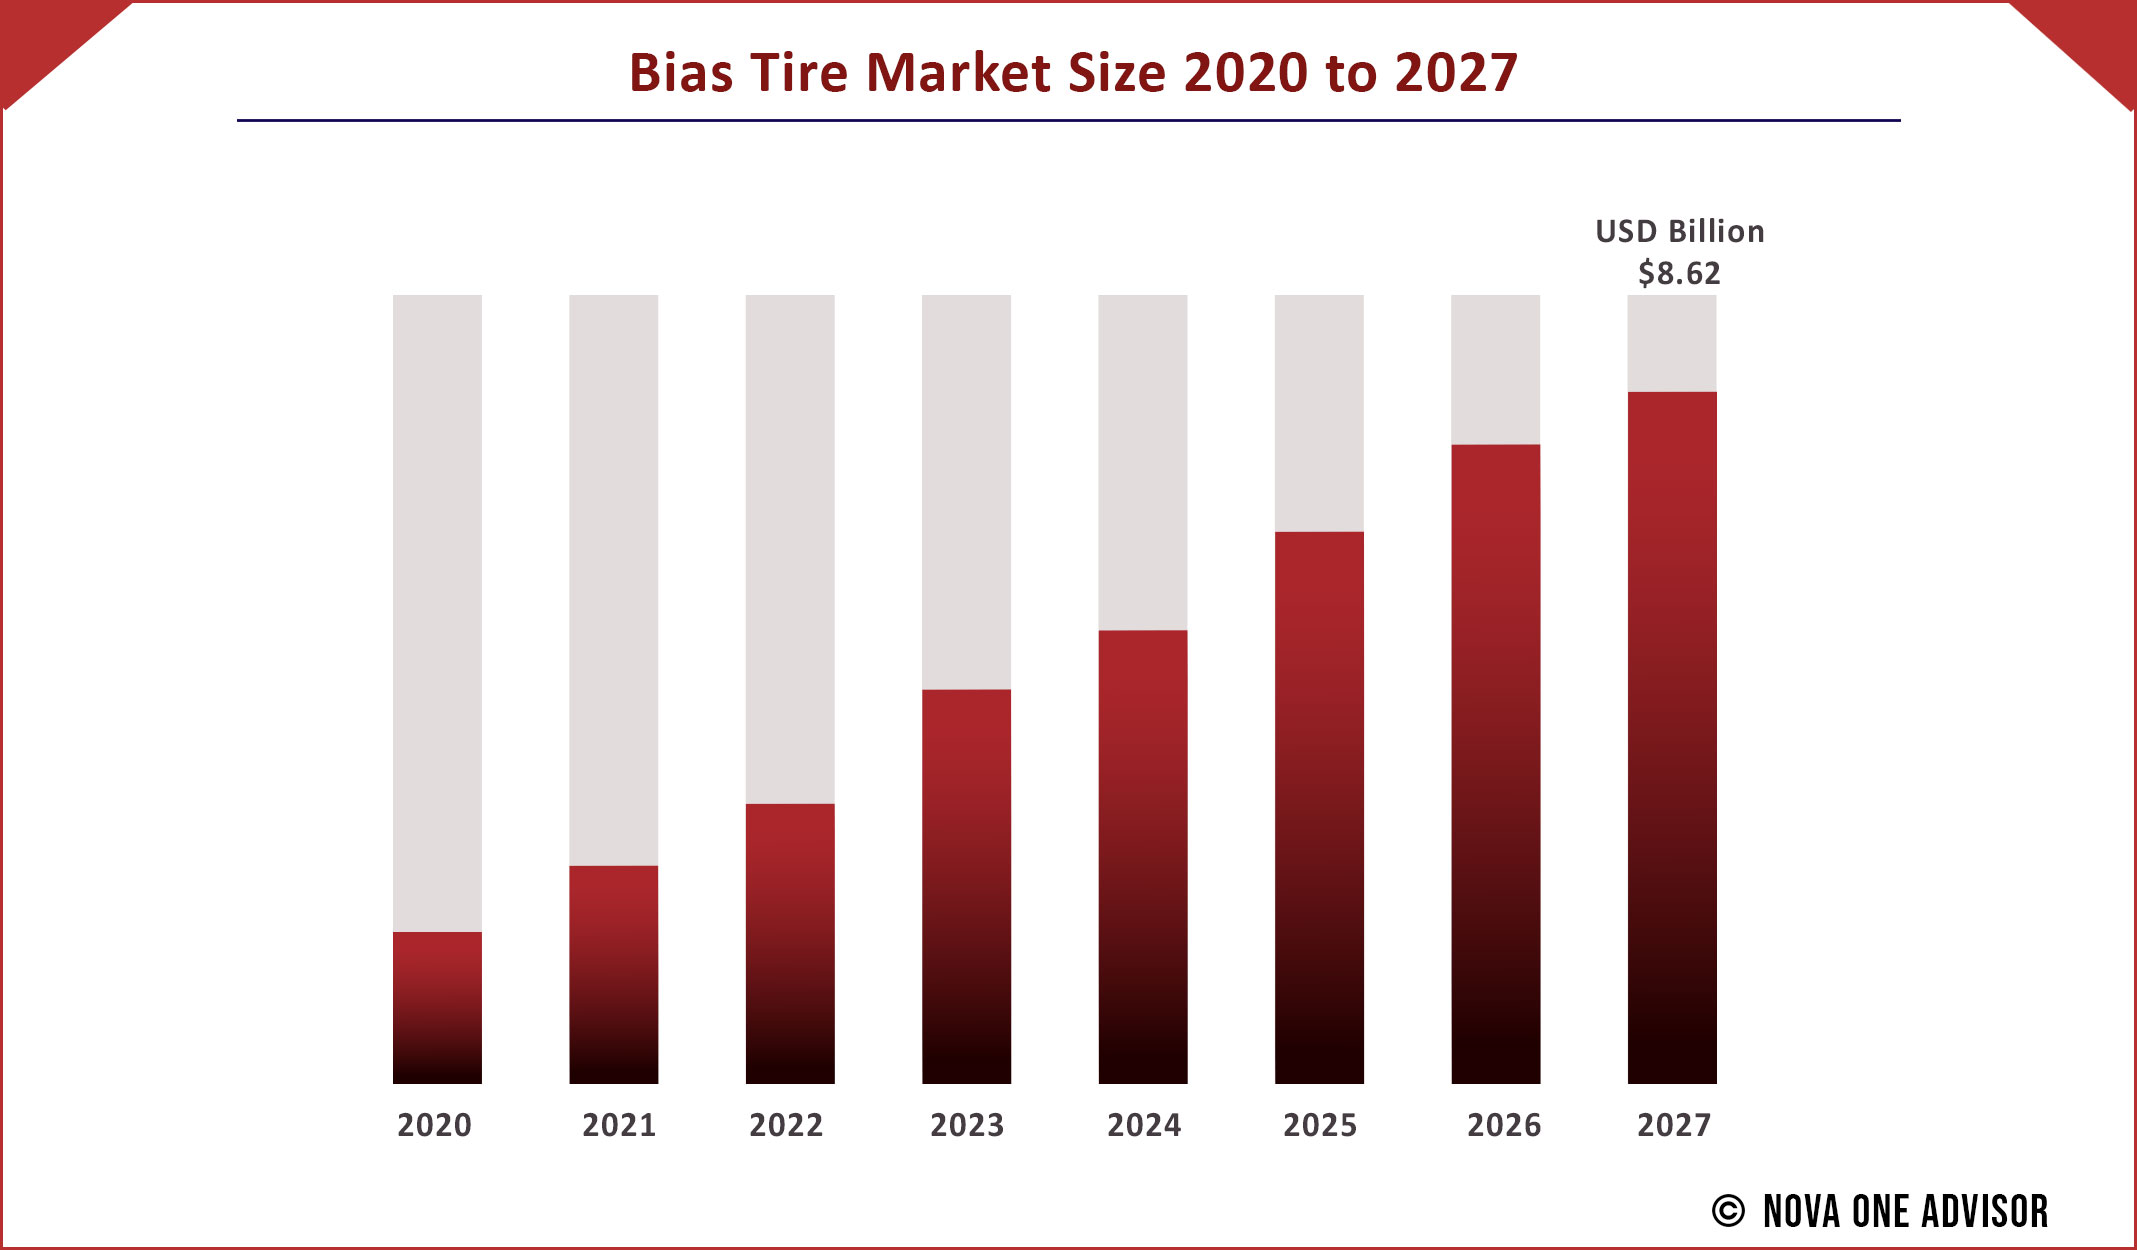 Bias Tire Market Size 2020 to 2027